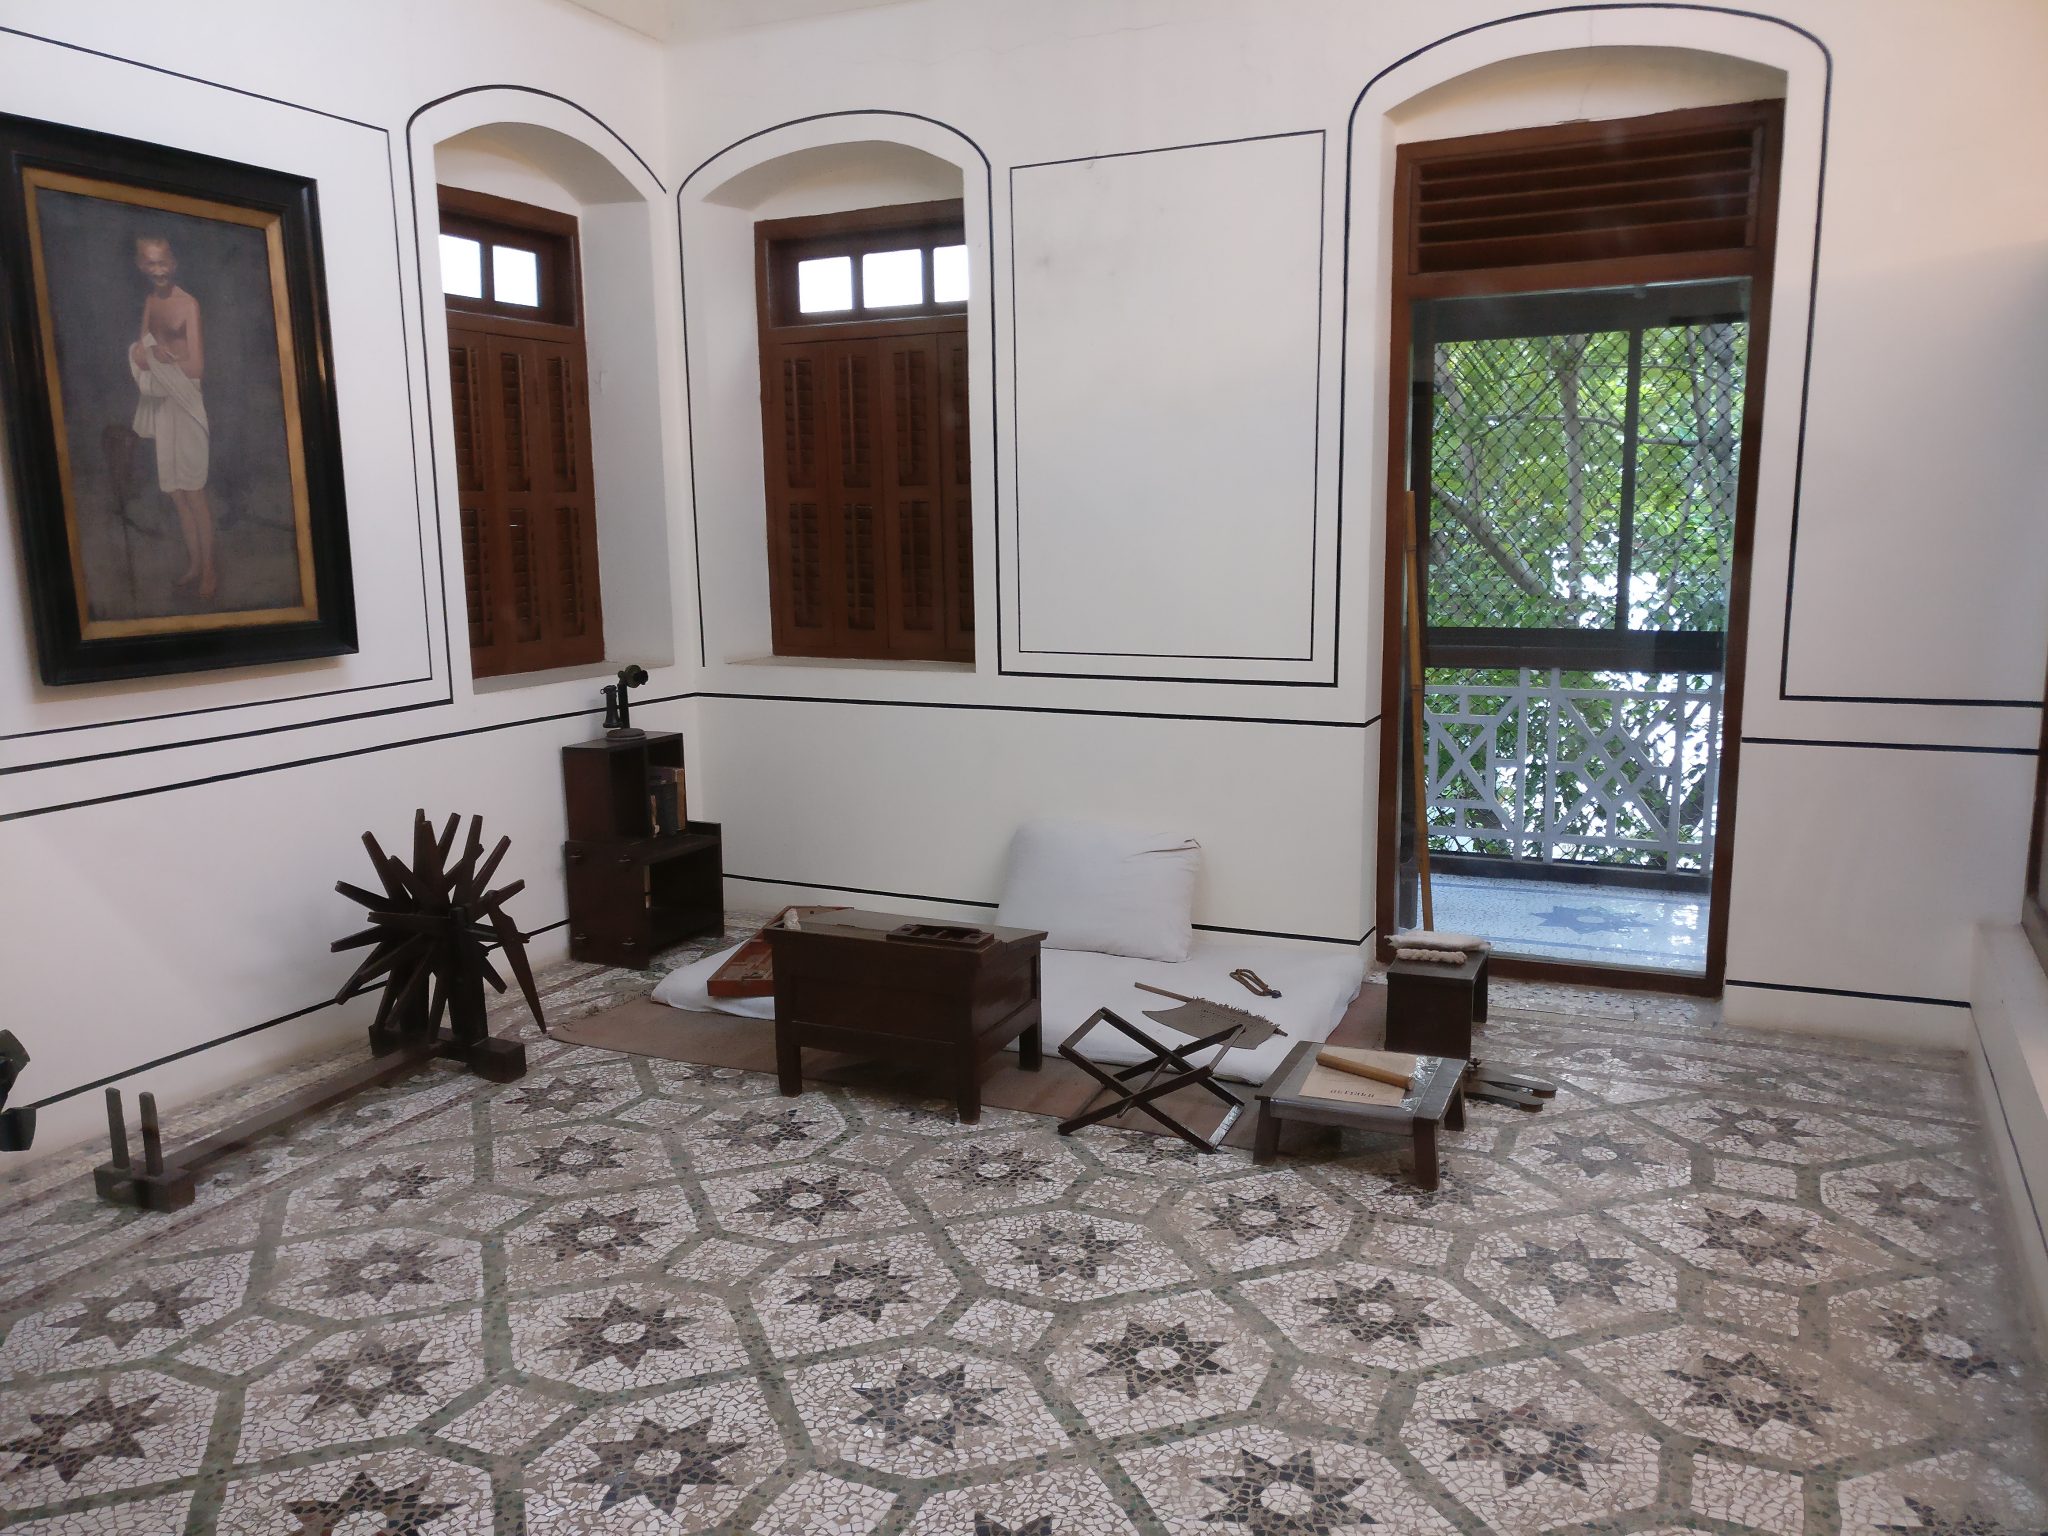 Gandhi's room, in the Gandhi Memorial Museum